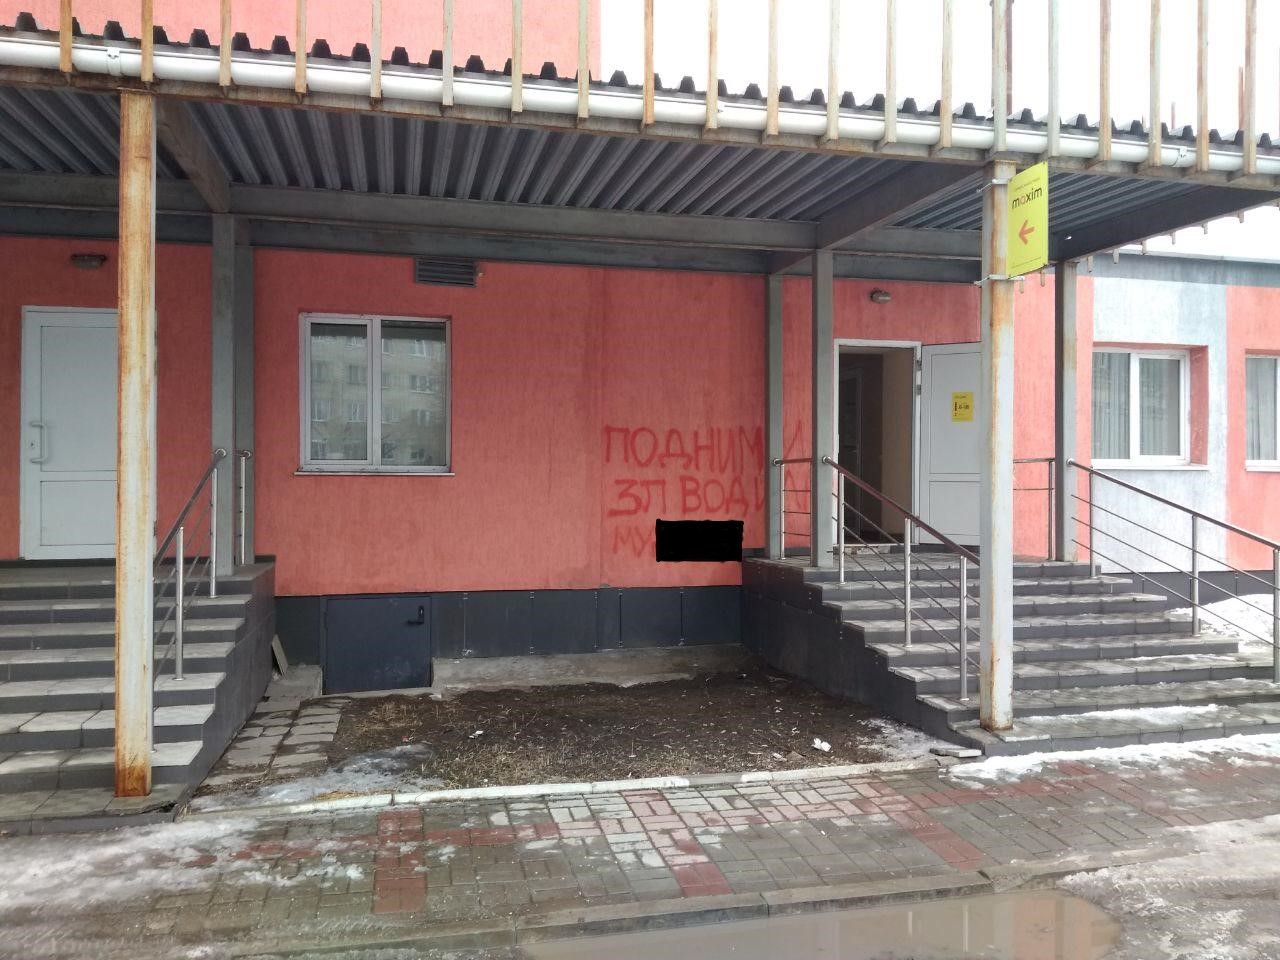 В Серове на стене здания, в котором находится сервис заказа такси "Максим", появилась оскорбительная надпись: "Подними зп водилам..."